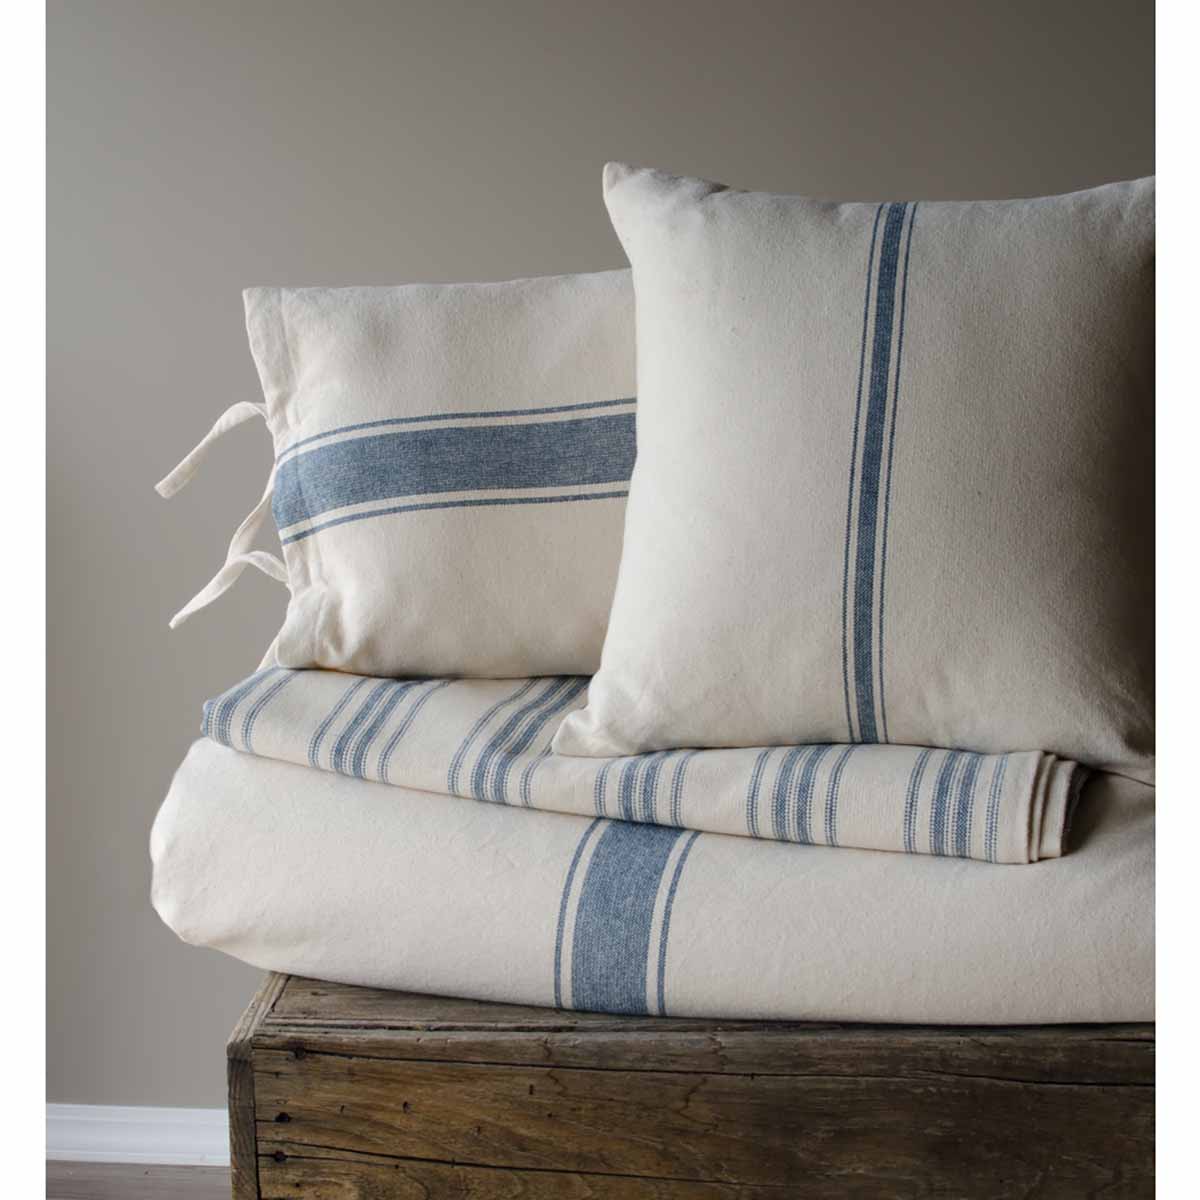 Pillow Cover - Grain Sack Stripe, Cream/Blue, Square